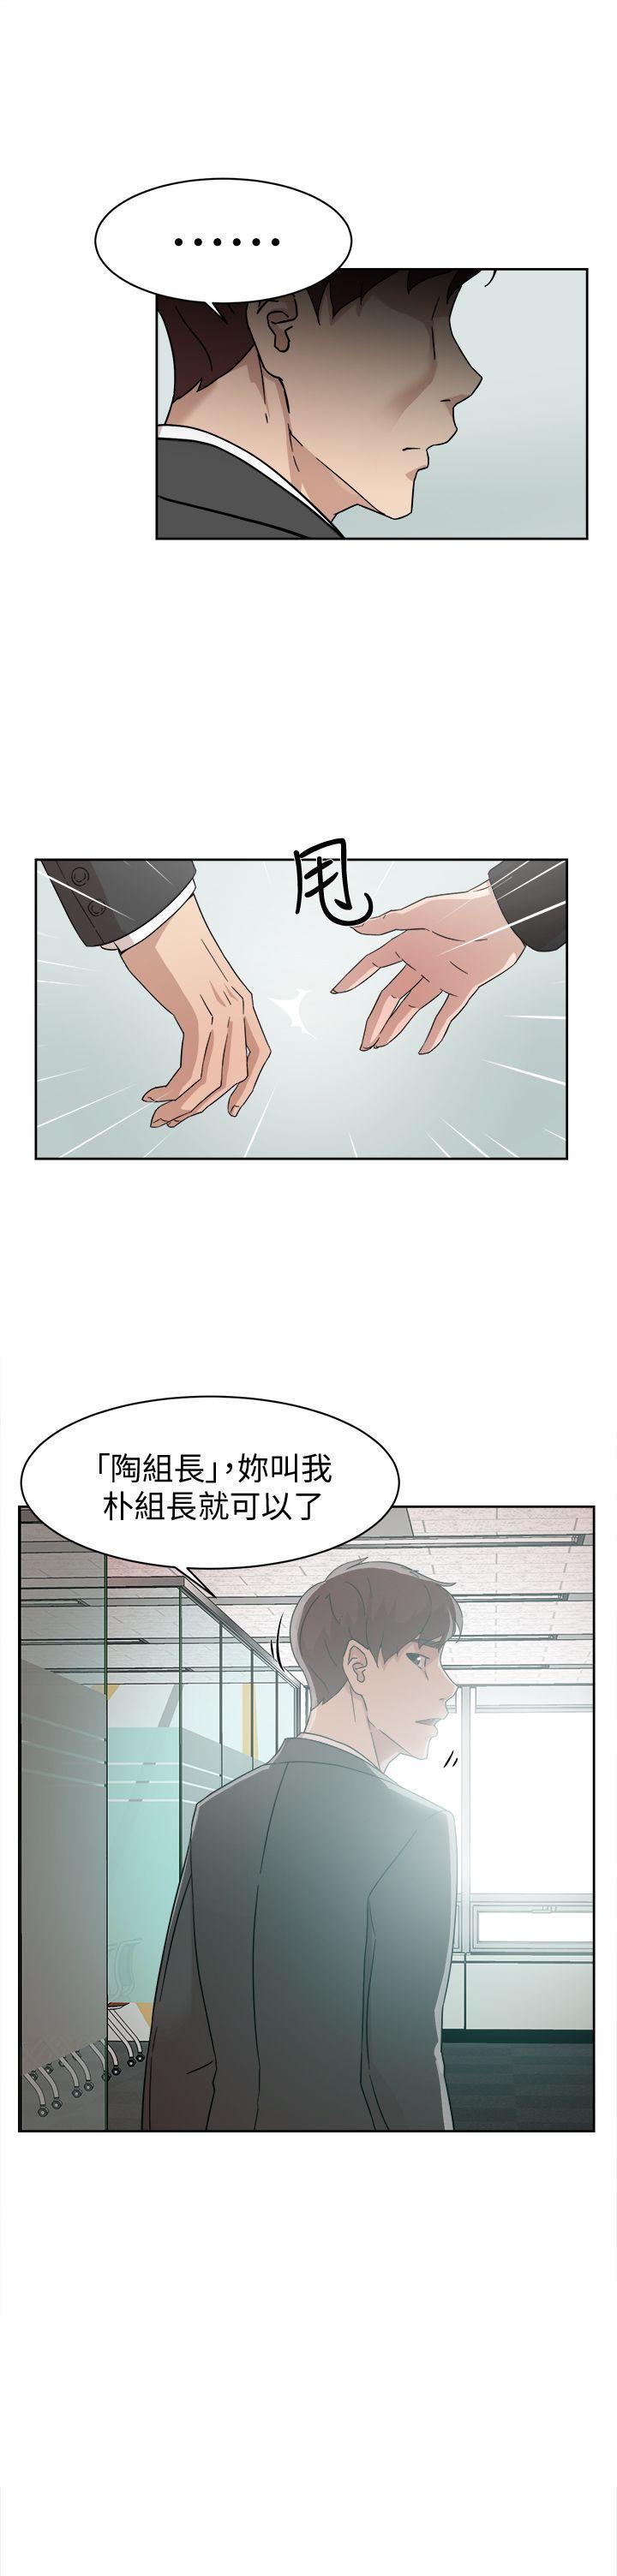 韩国污漫画 她的高跟鞋(無刪減) 第59话-被看到也无所谓 15